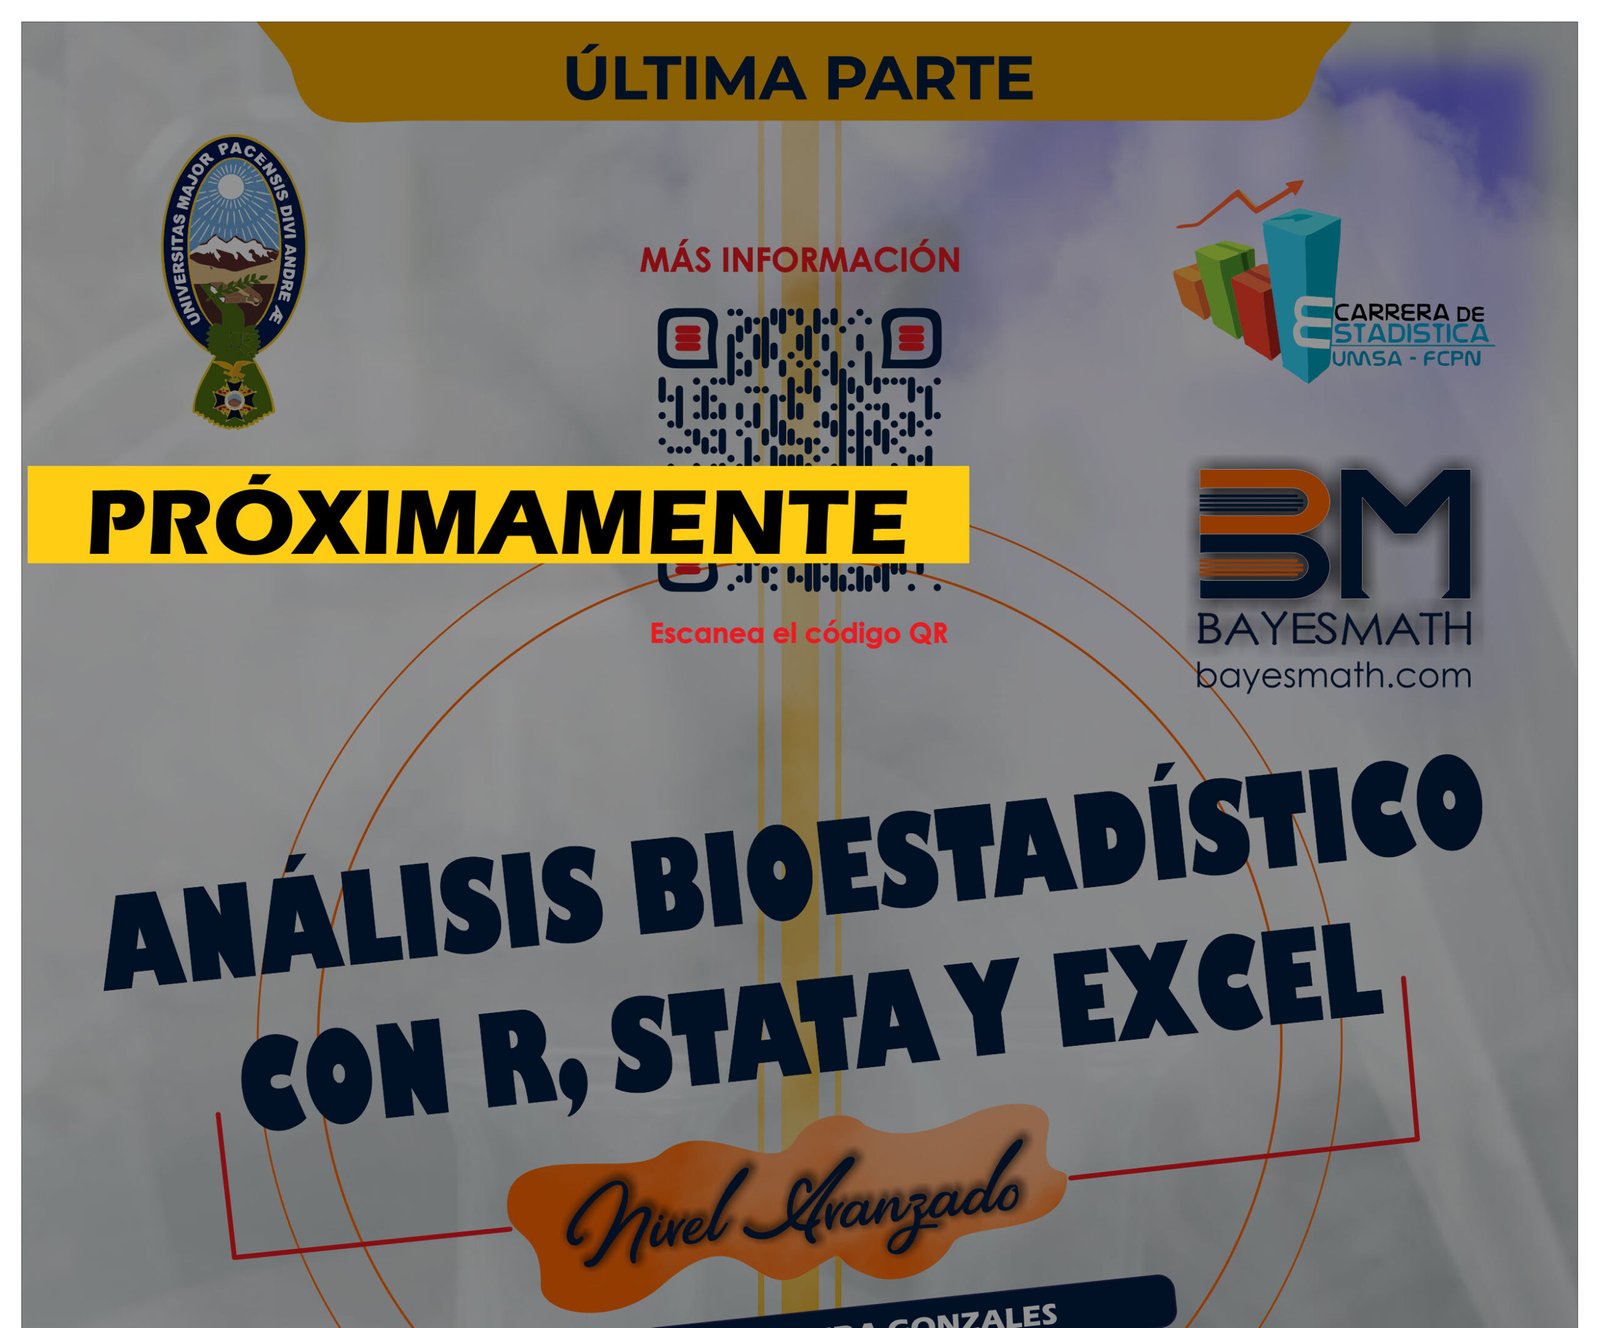 Análisis Bioestadístico con R, Stata y Excel – Nivel Avanzado